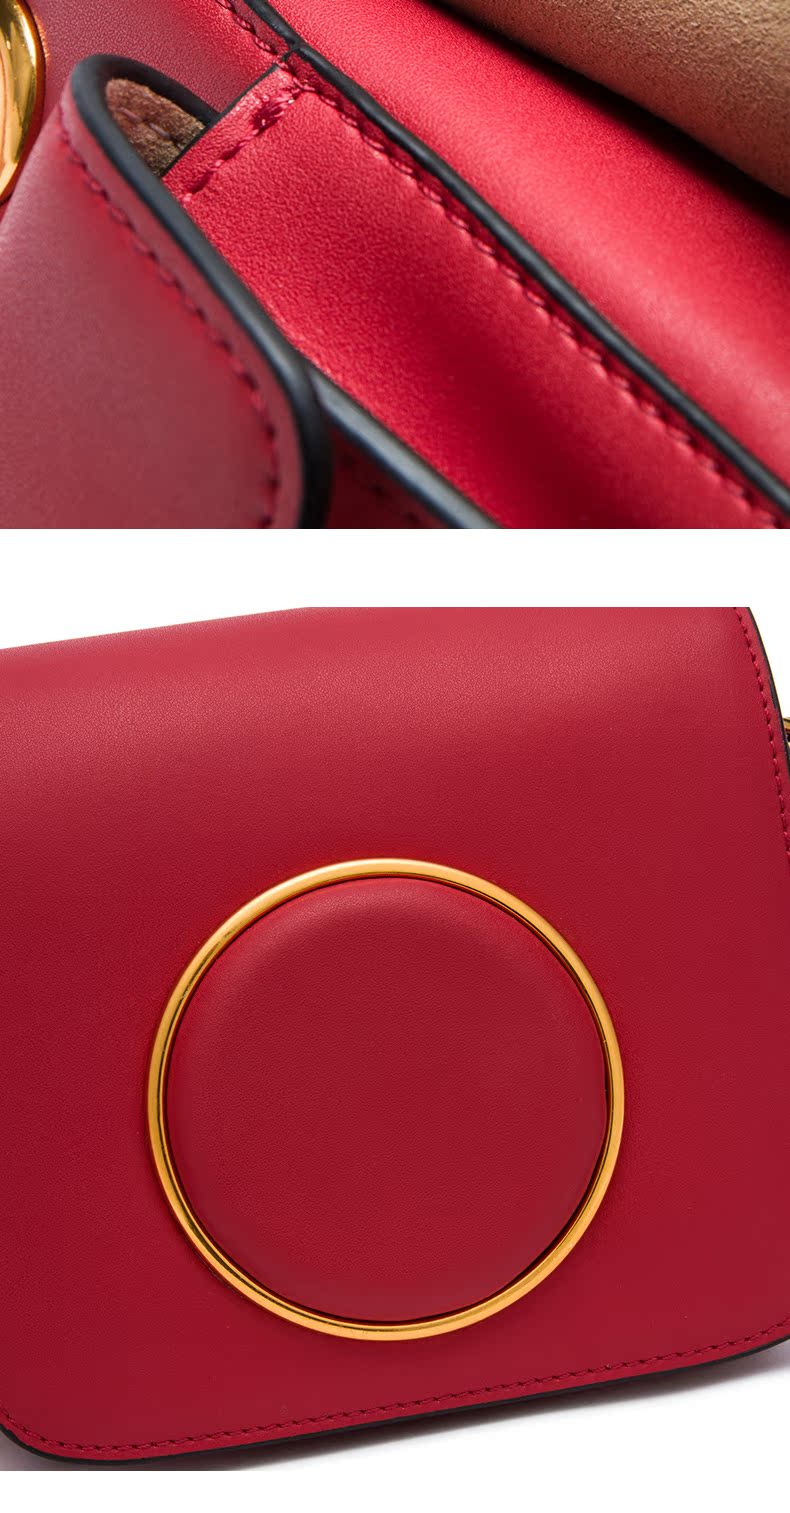 愛馬仕的維多利亞款包 維維米2020新款明星同款相機包真皮女包小方包單肩斜挎小包包鏈條 愛馬仕的鉑金包